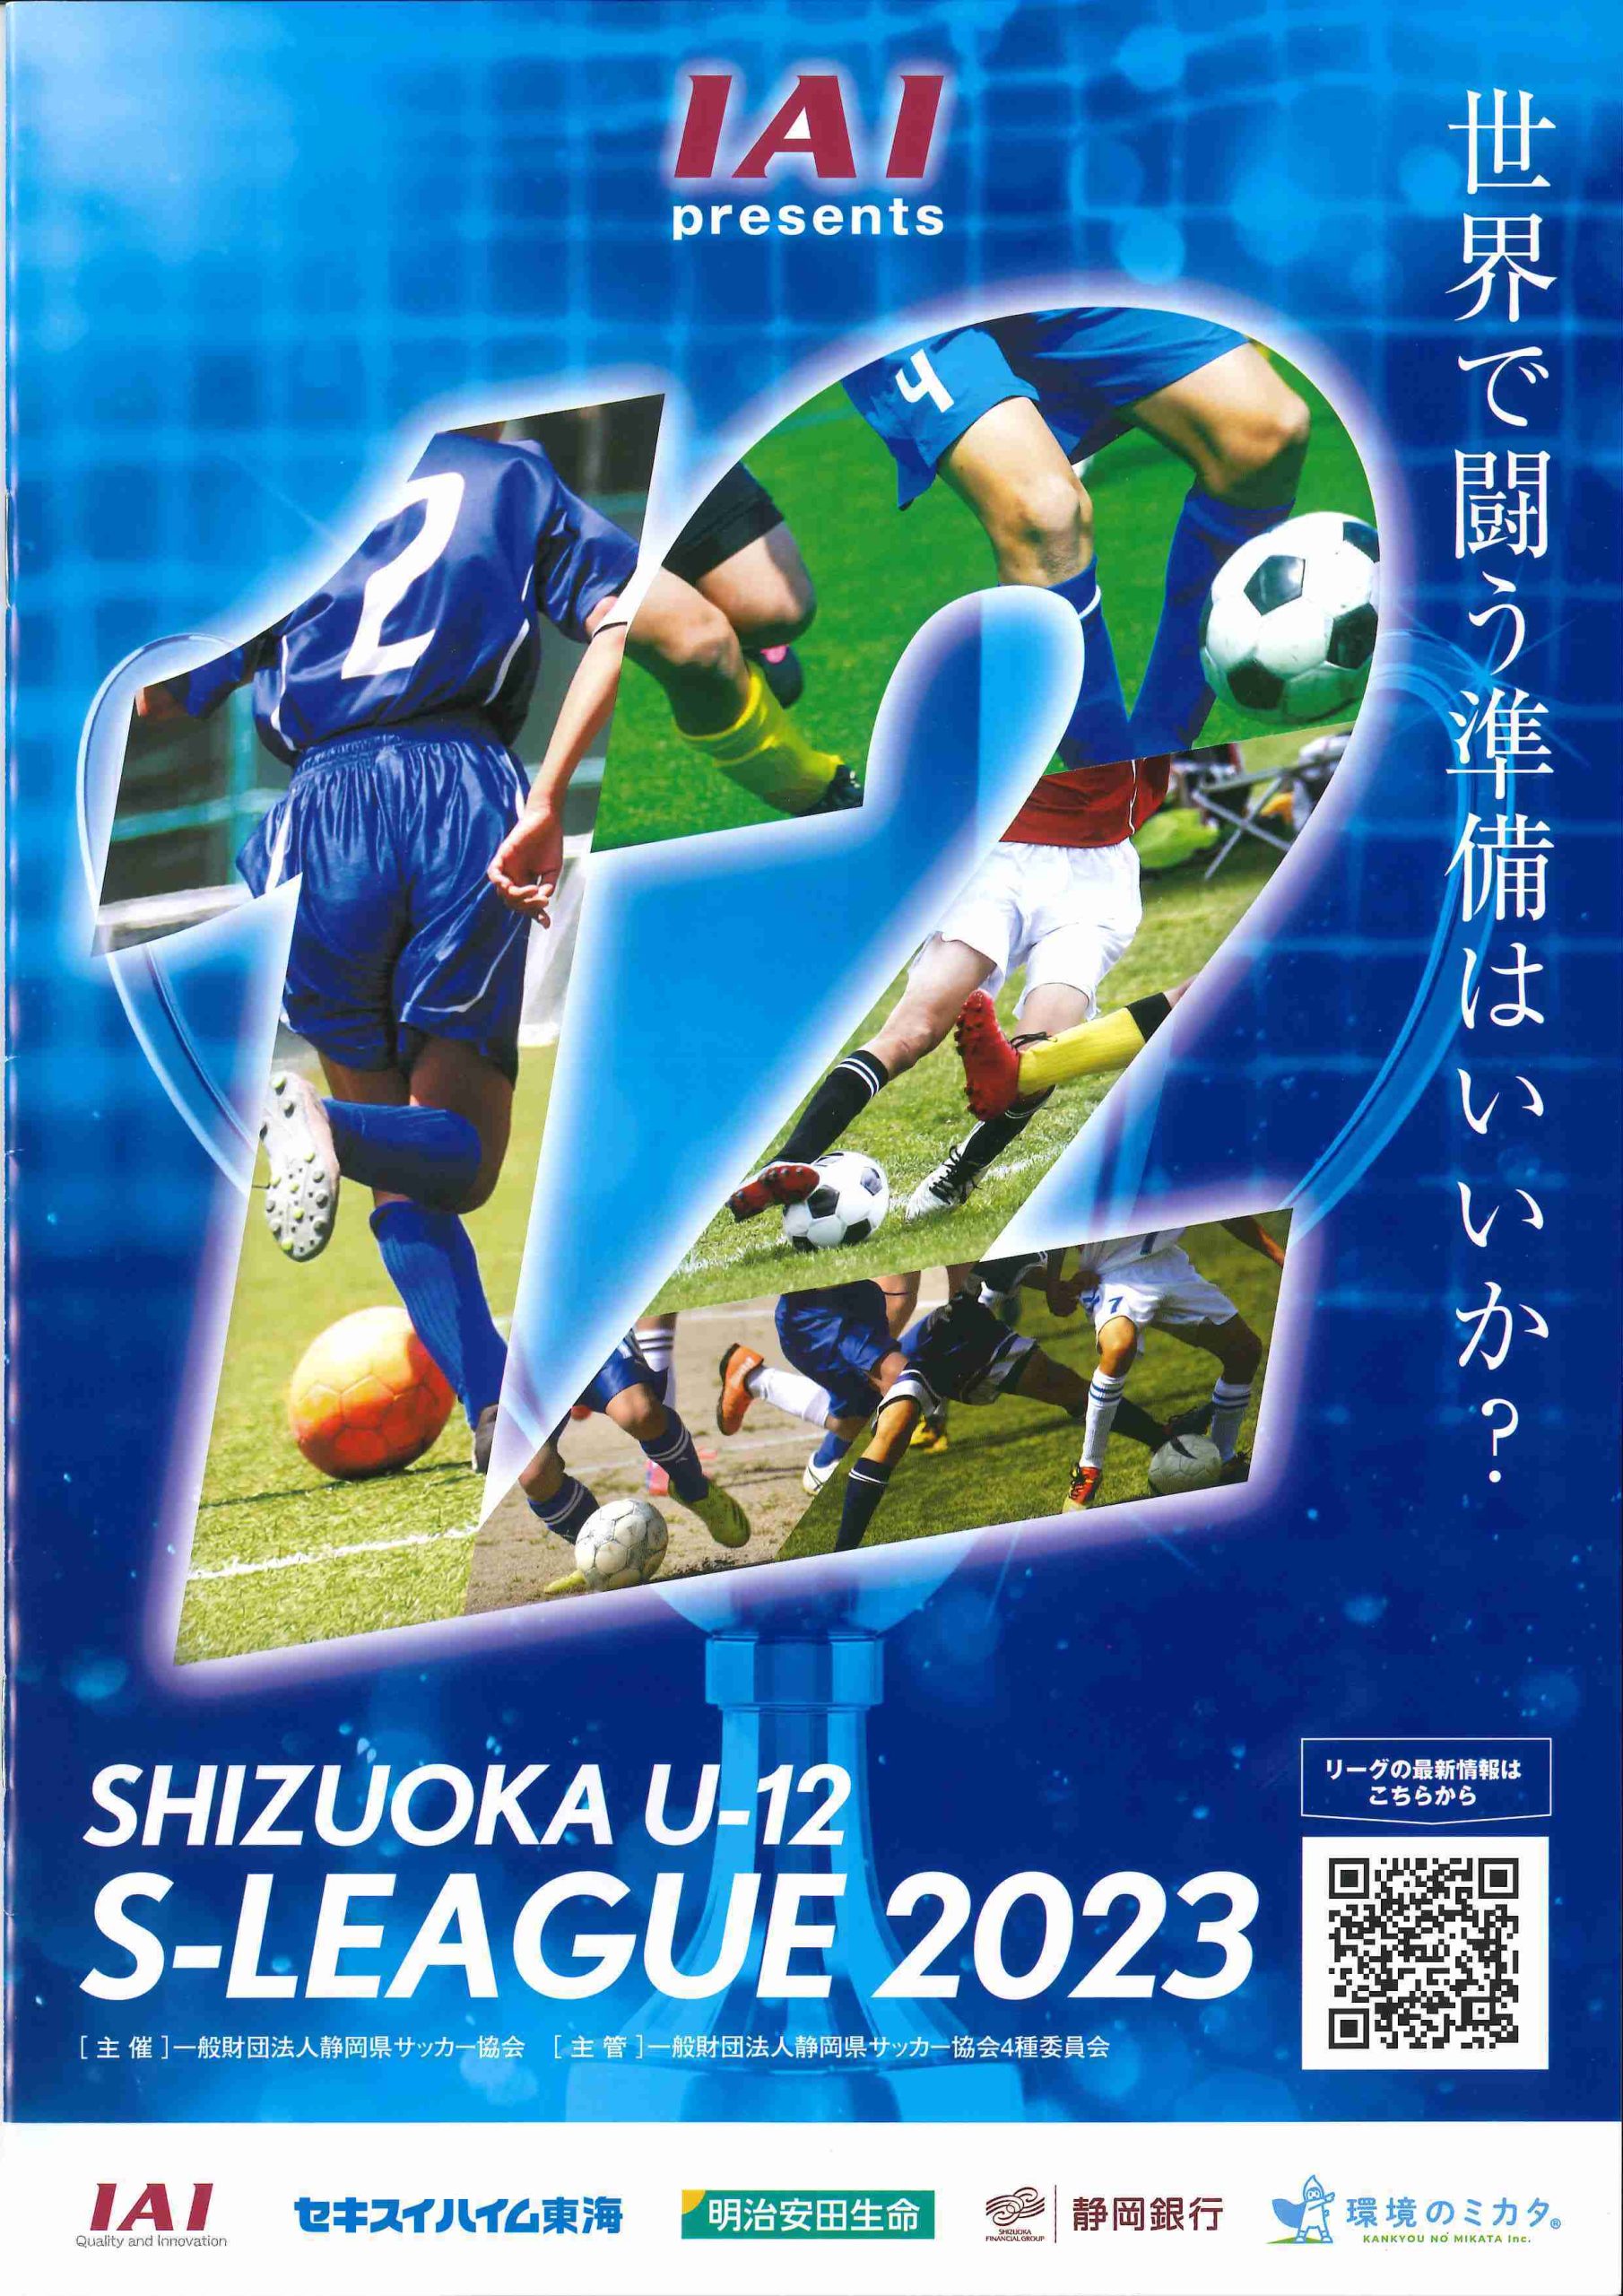 「SHIZUOKA U12 S−LEAGUE 2023」への協賛について